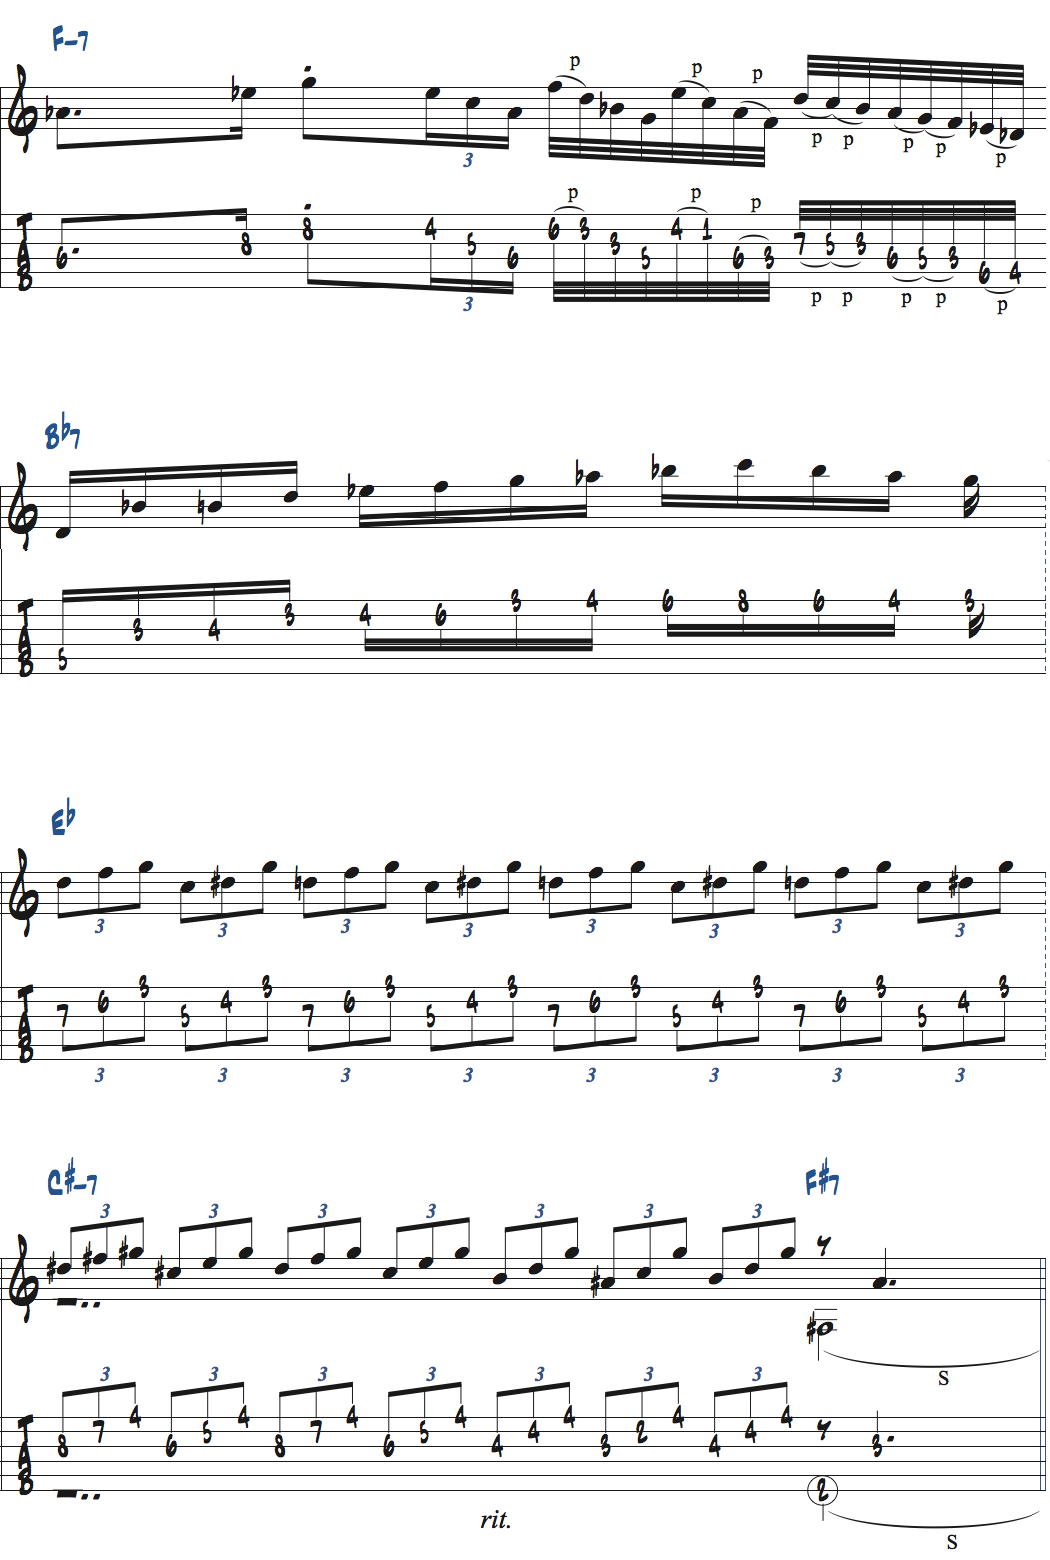 ジョー・パスのGiant Steps[D]セクション楽譜ページ3